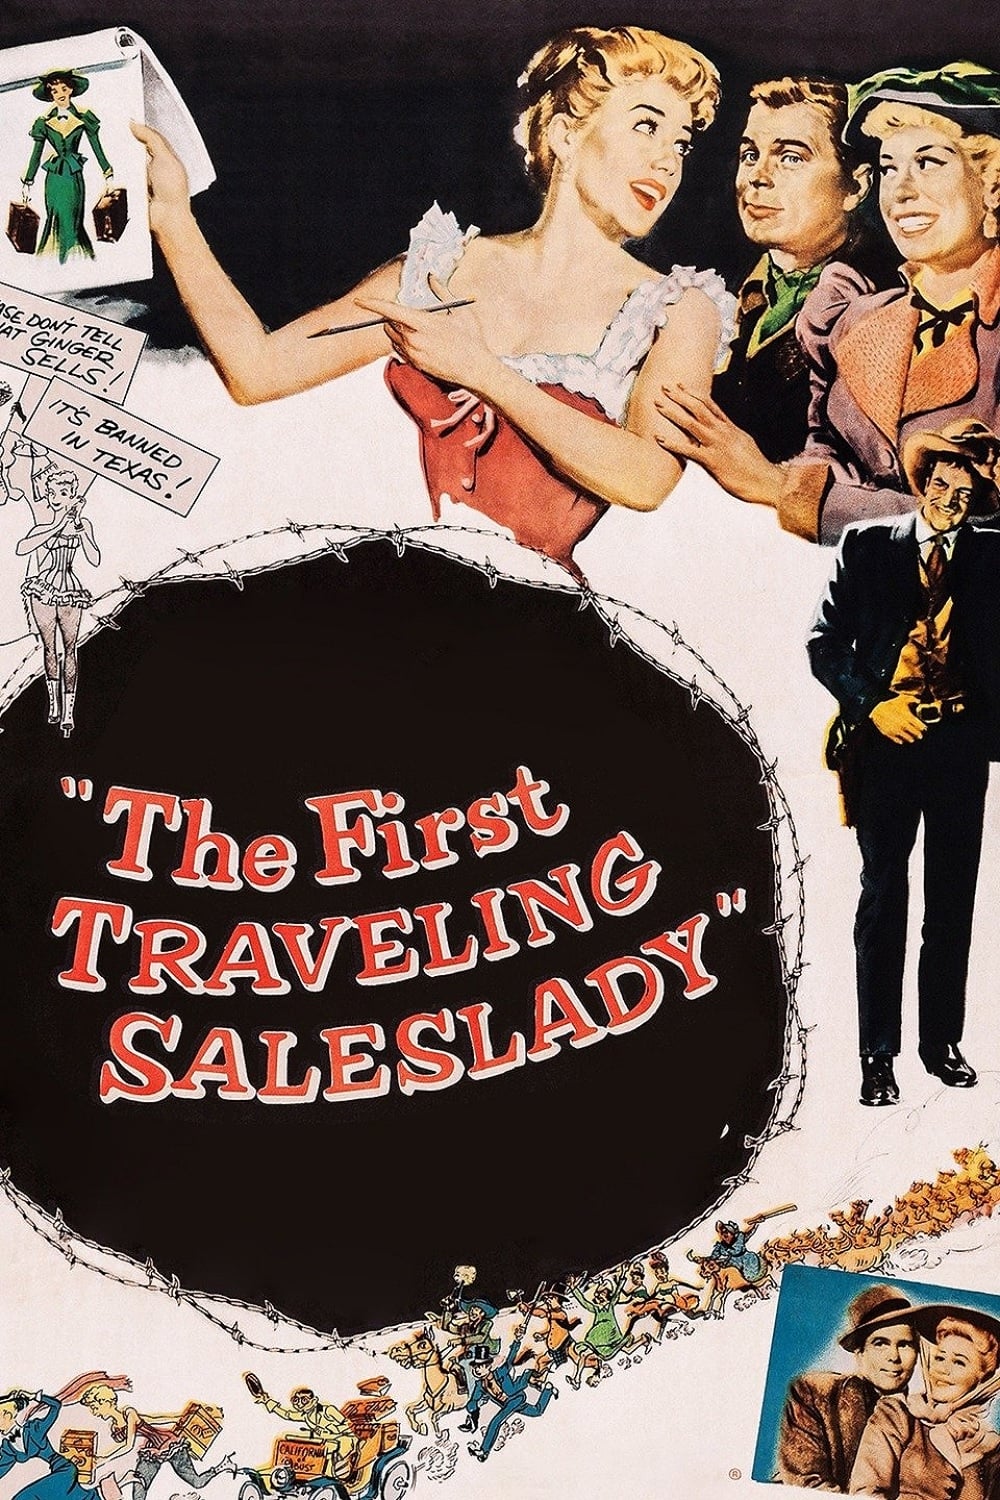 Plakat von "The First Traveling Saleslady"